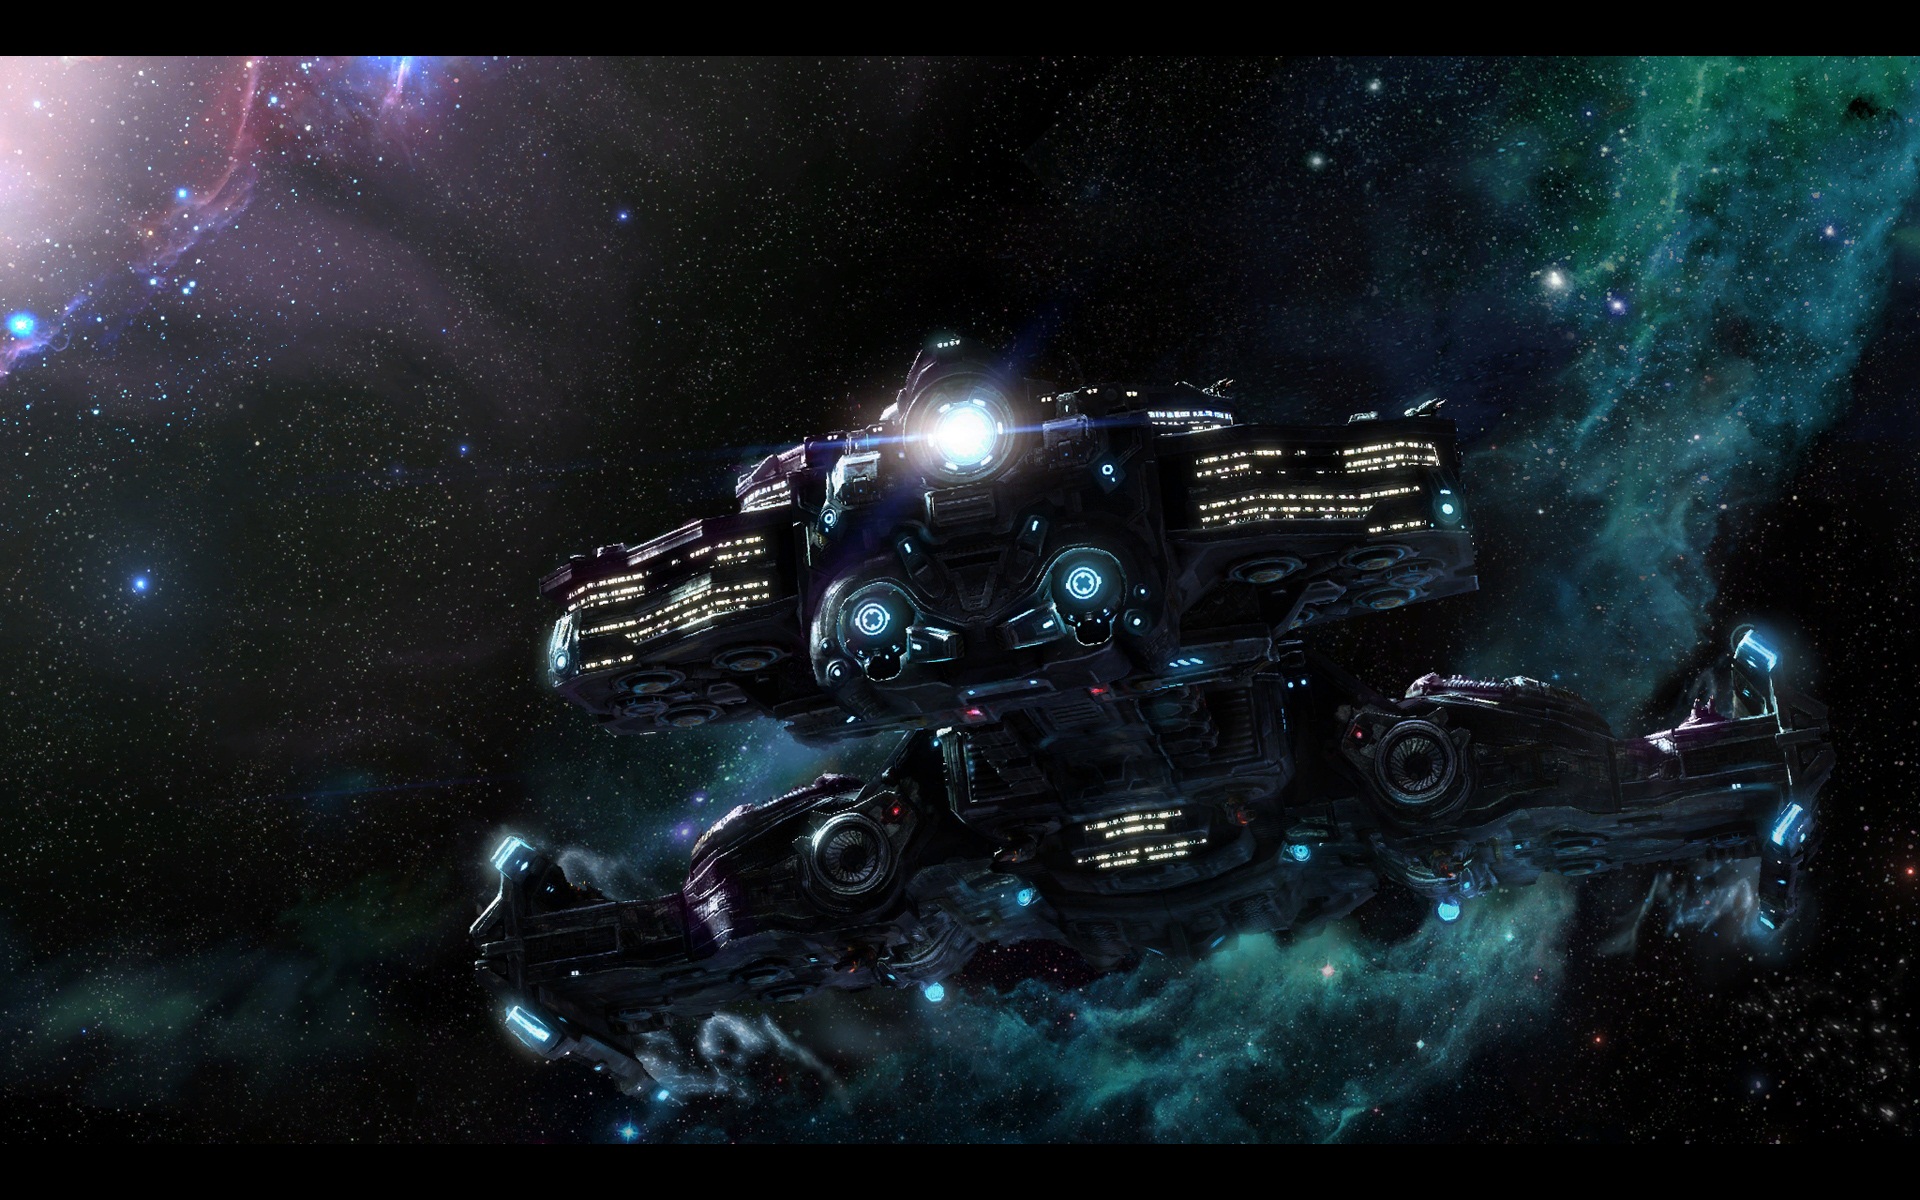 Starcraft 2 background